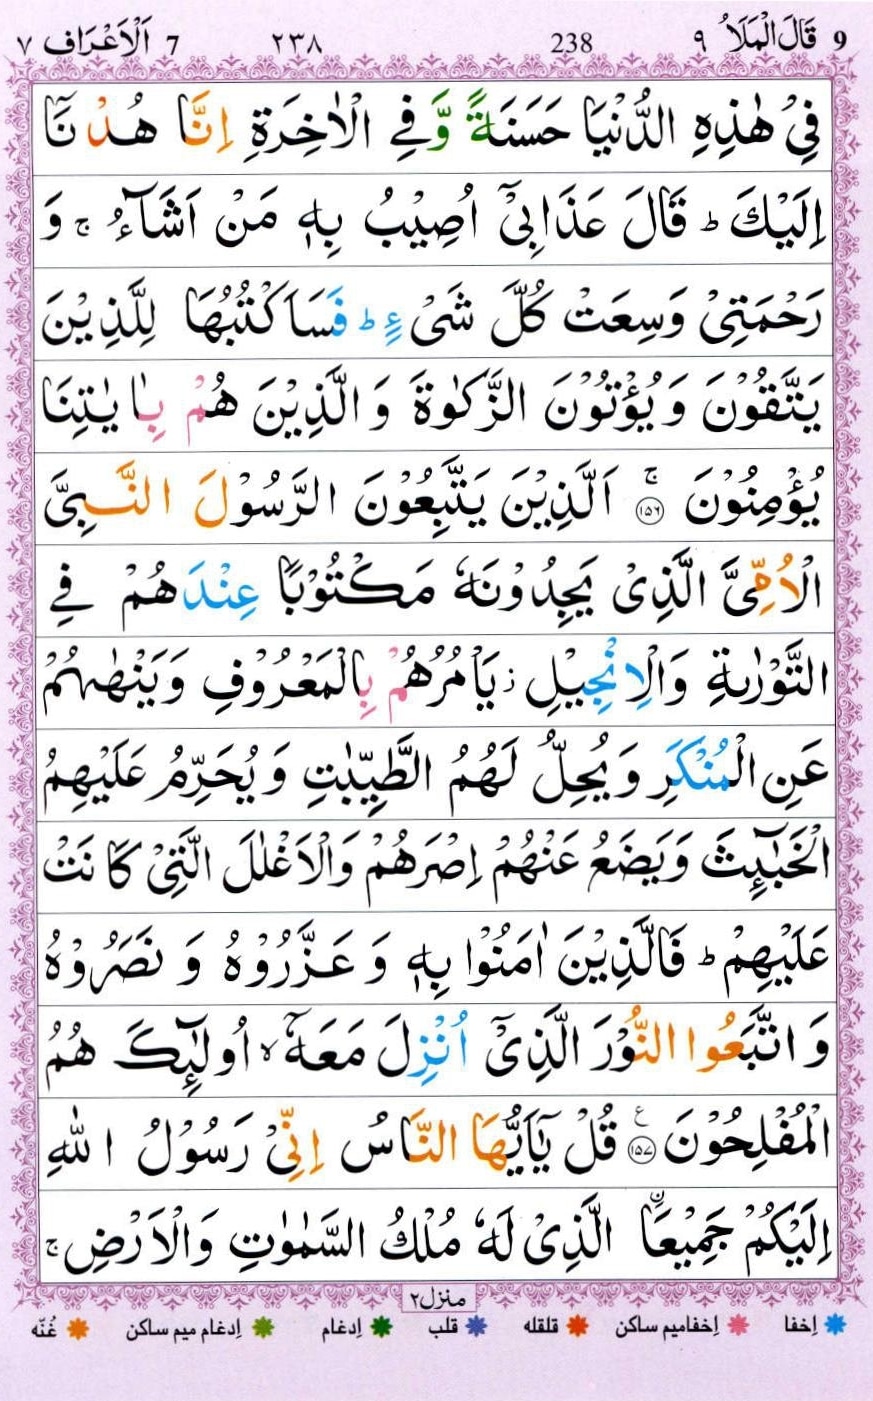 Surah Al Araf With Urdu Translation